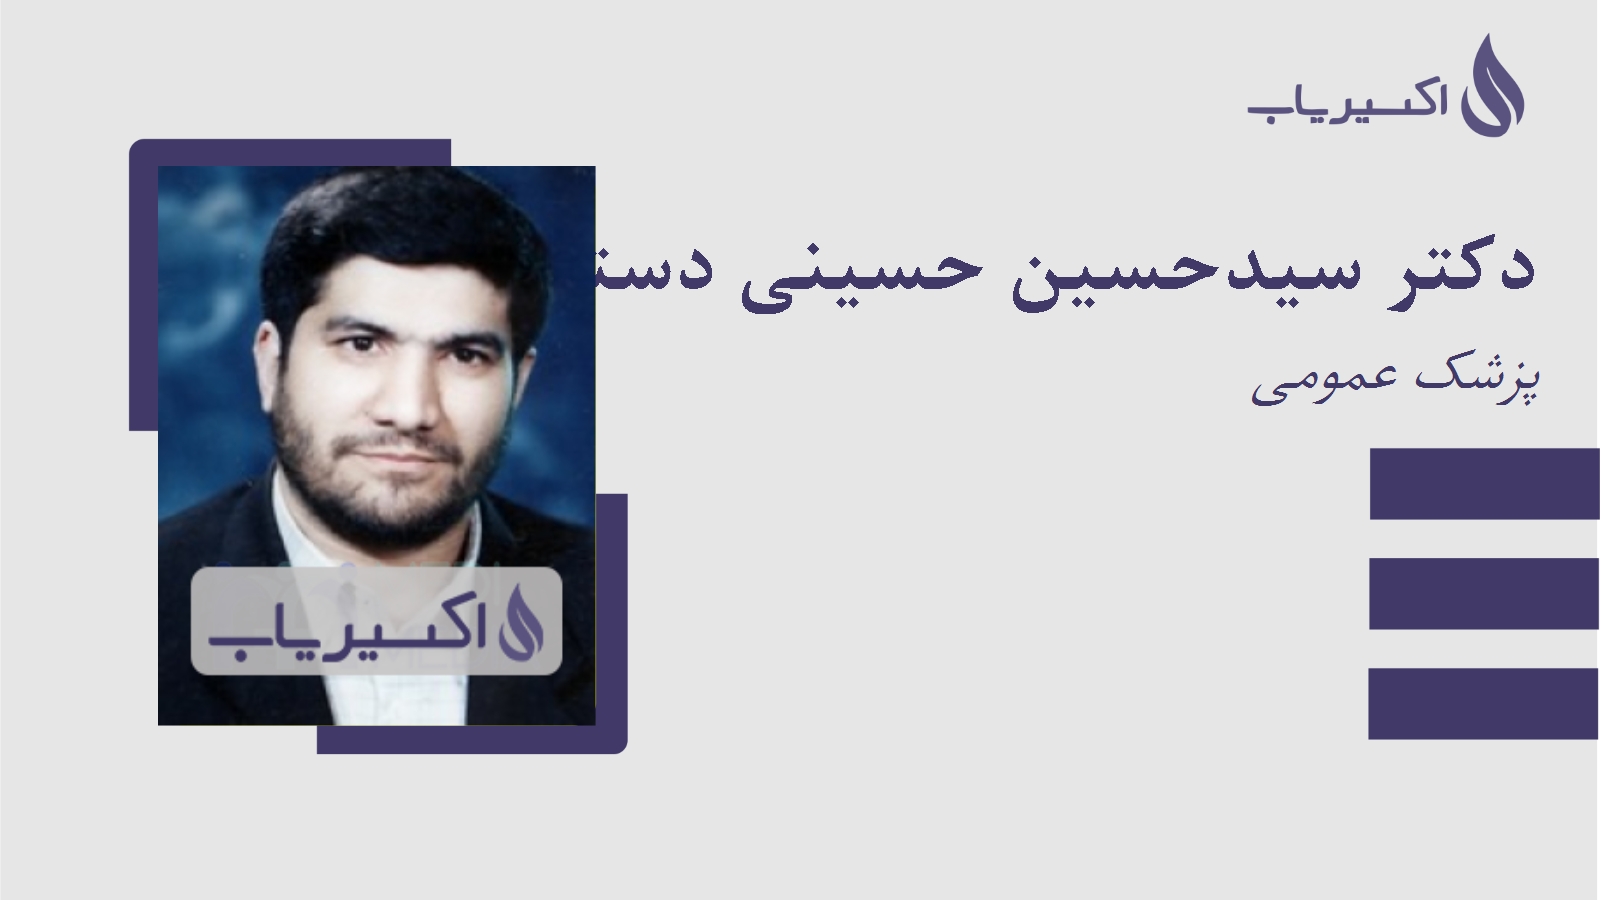 مطب دکتر سیدحسین حسینی دستجردی